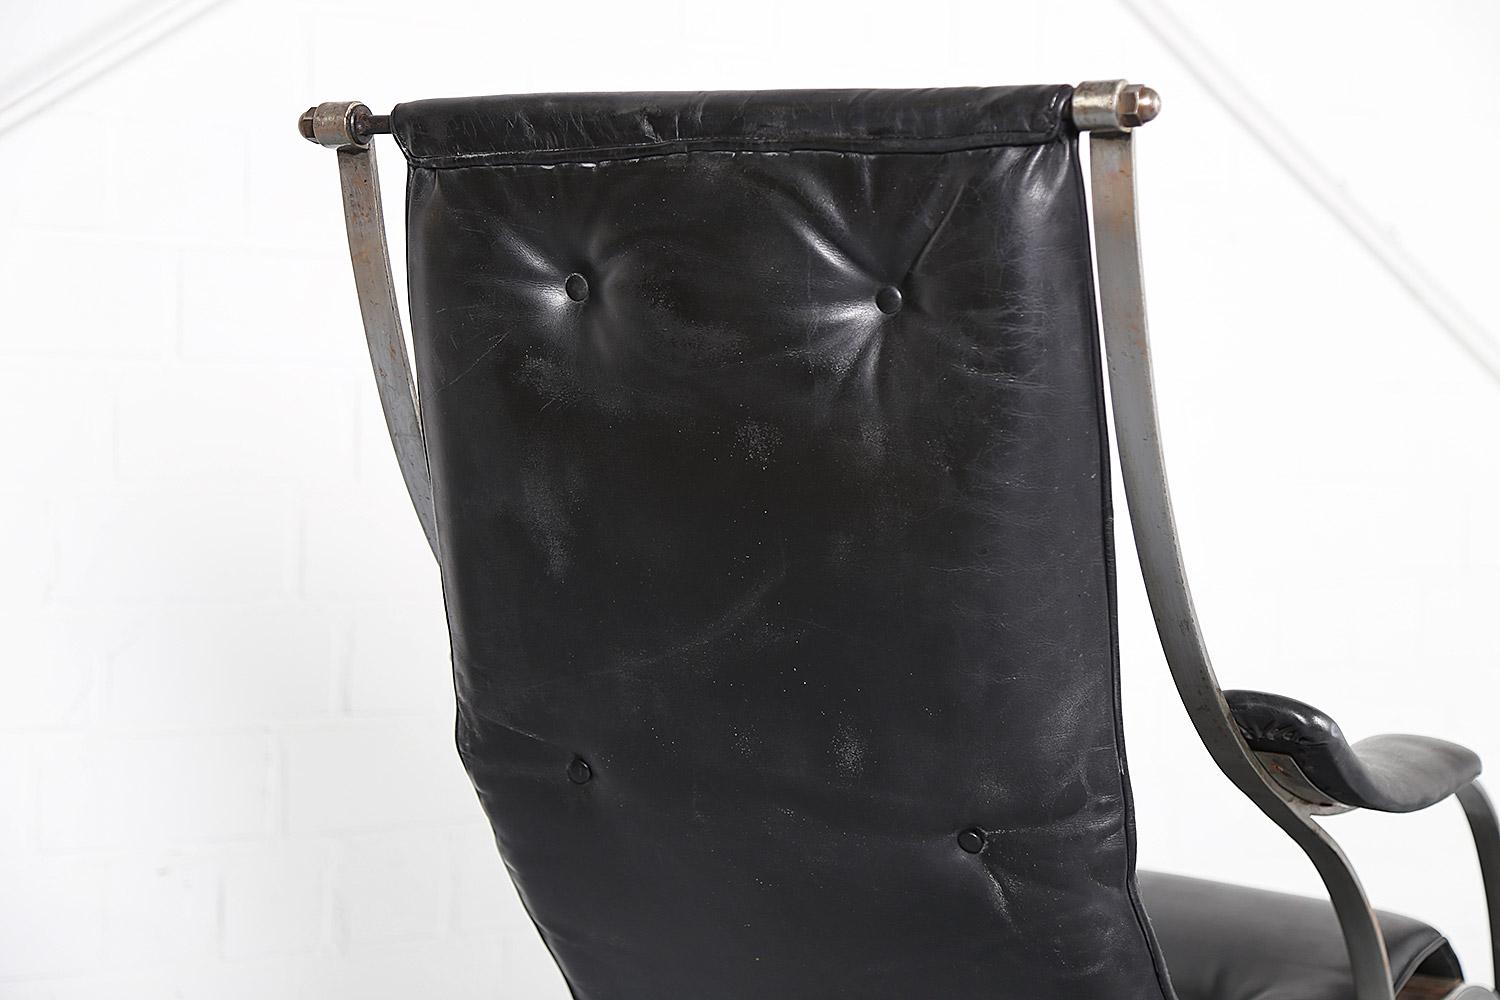 Fauteuil à bascule en fer conçu par Peter Cooper pour R.W. Winfield USA en 1851. Magnifique chaise à bascule basée sur le célèbre design des années 1850. R. W. Winfield a exposé ce design de chaise pour la première fois lors de la Grande Exposition